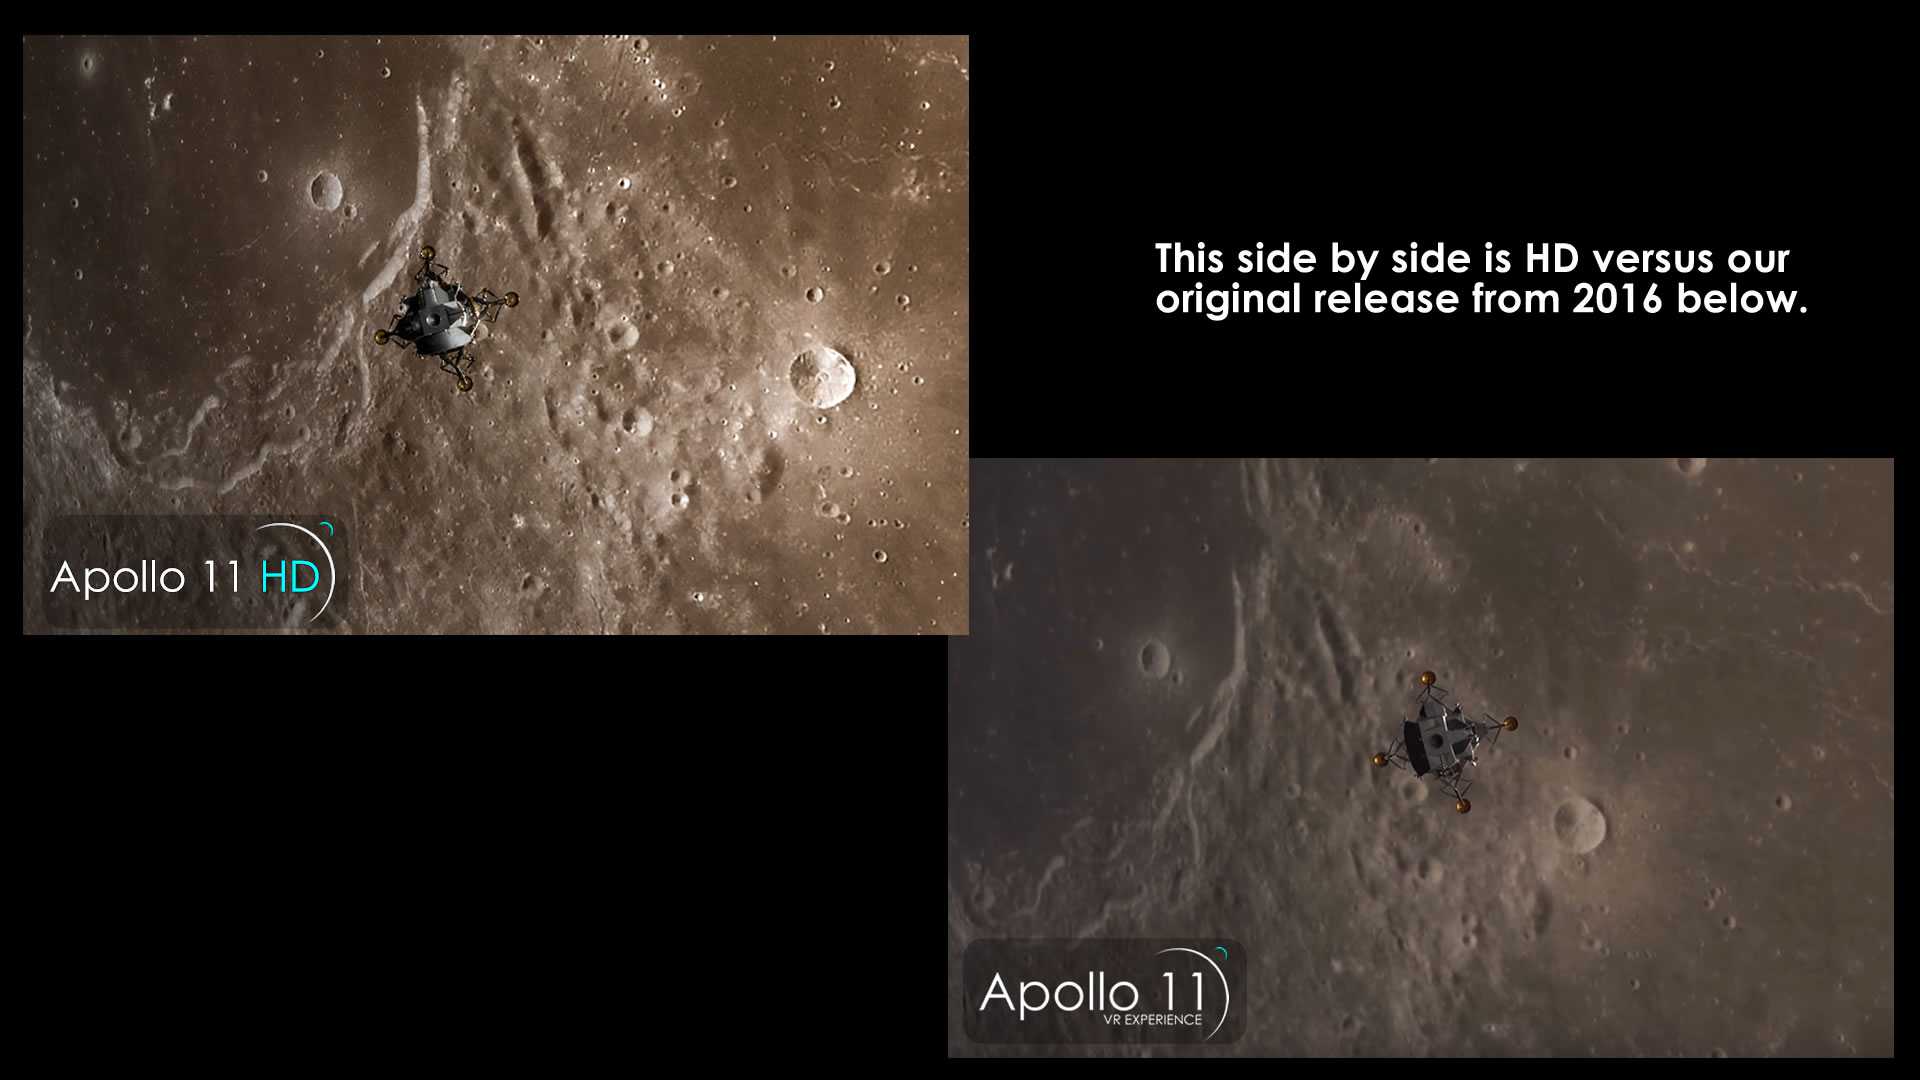 Apollo 11 VR HD